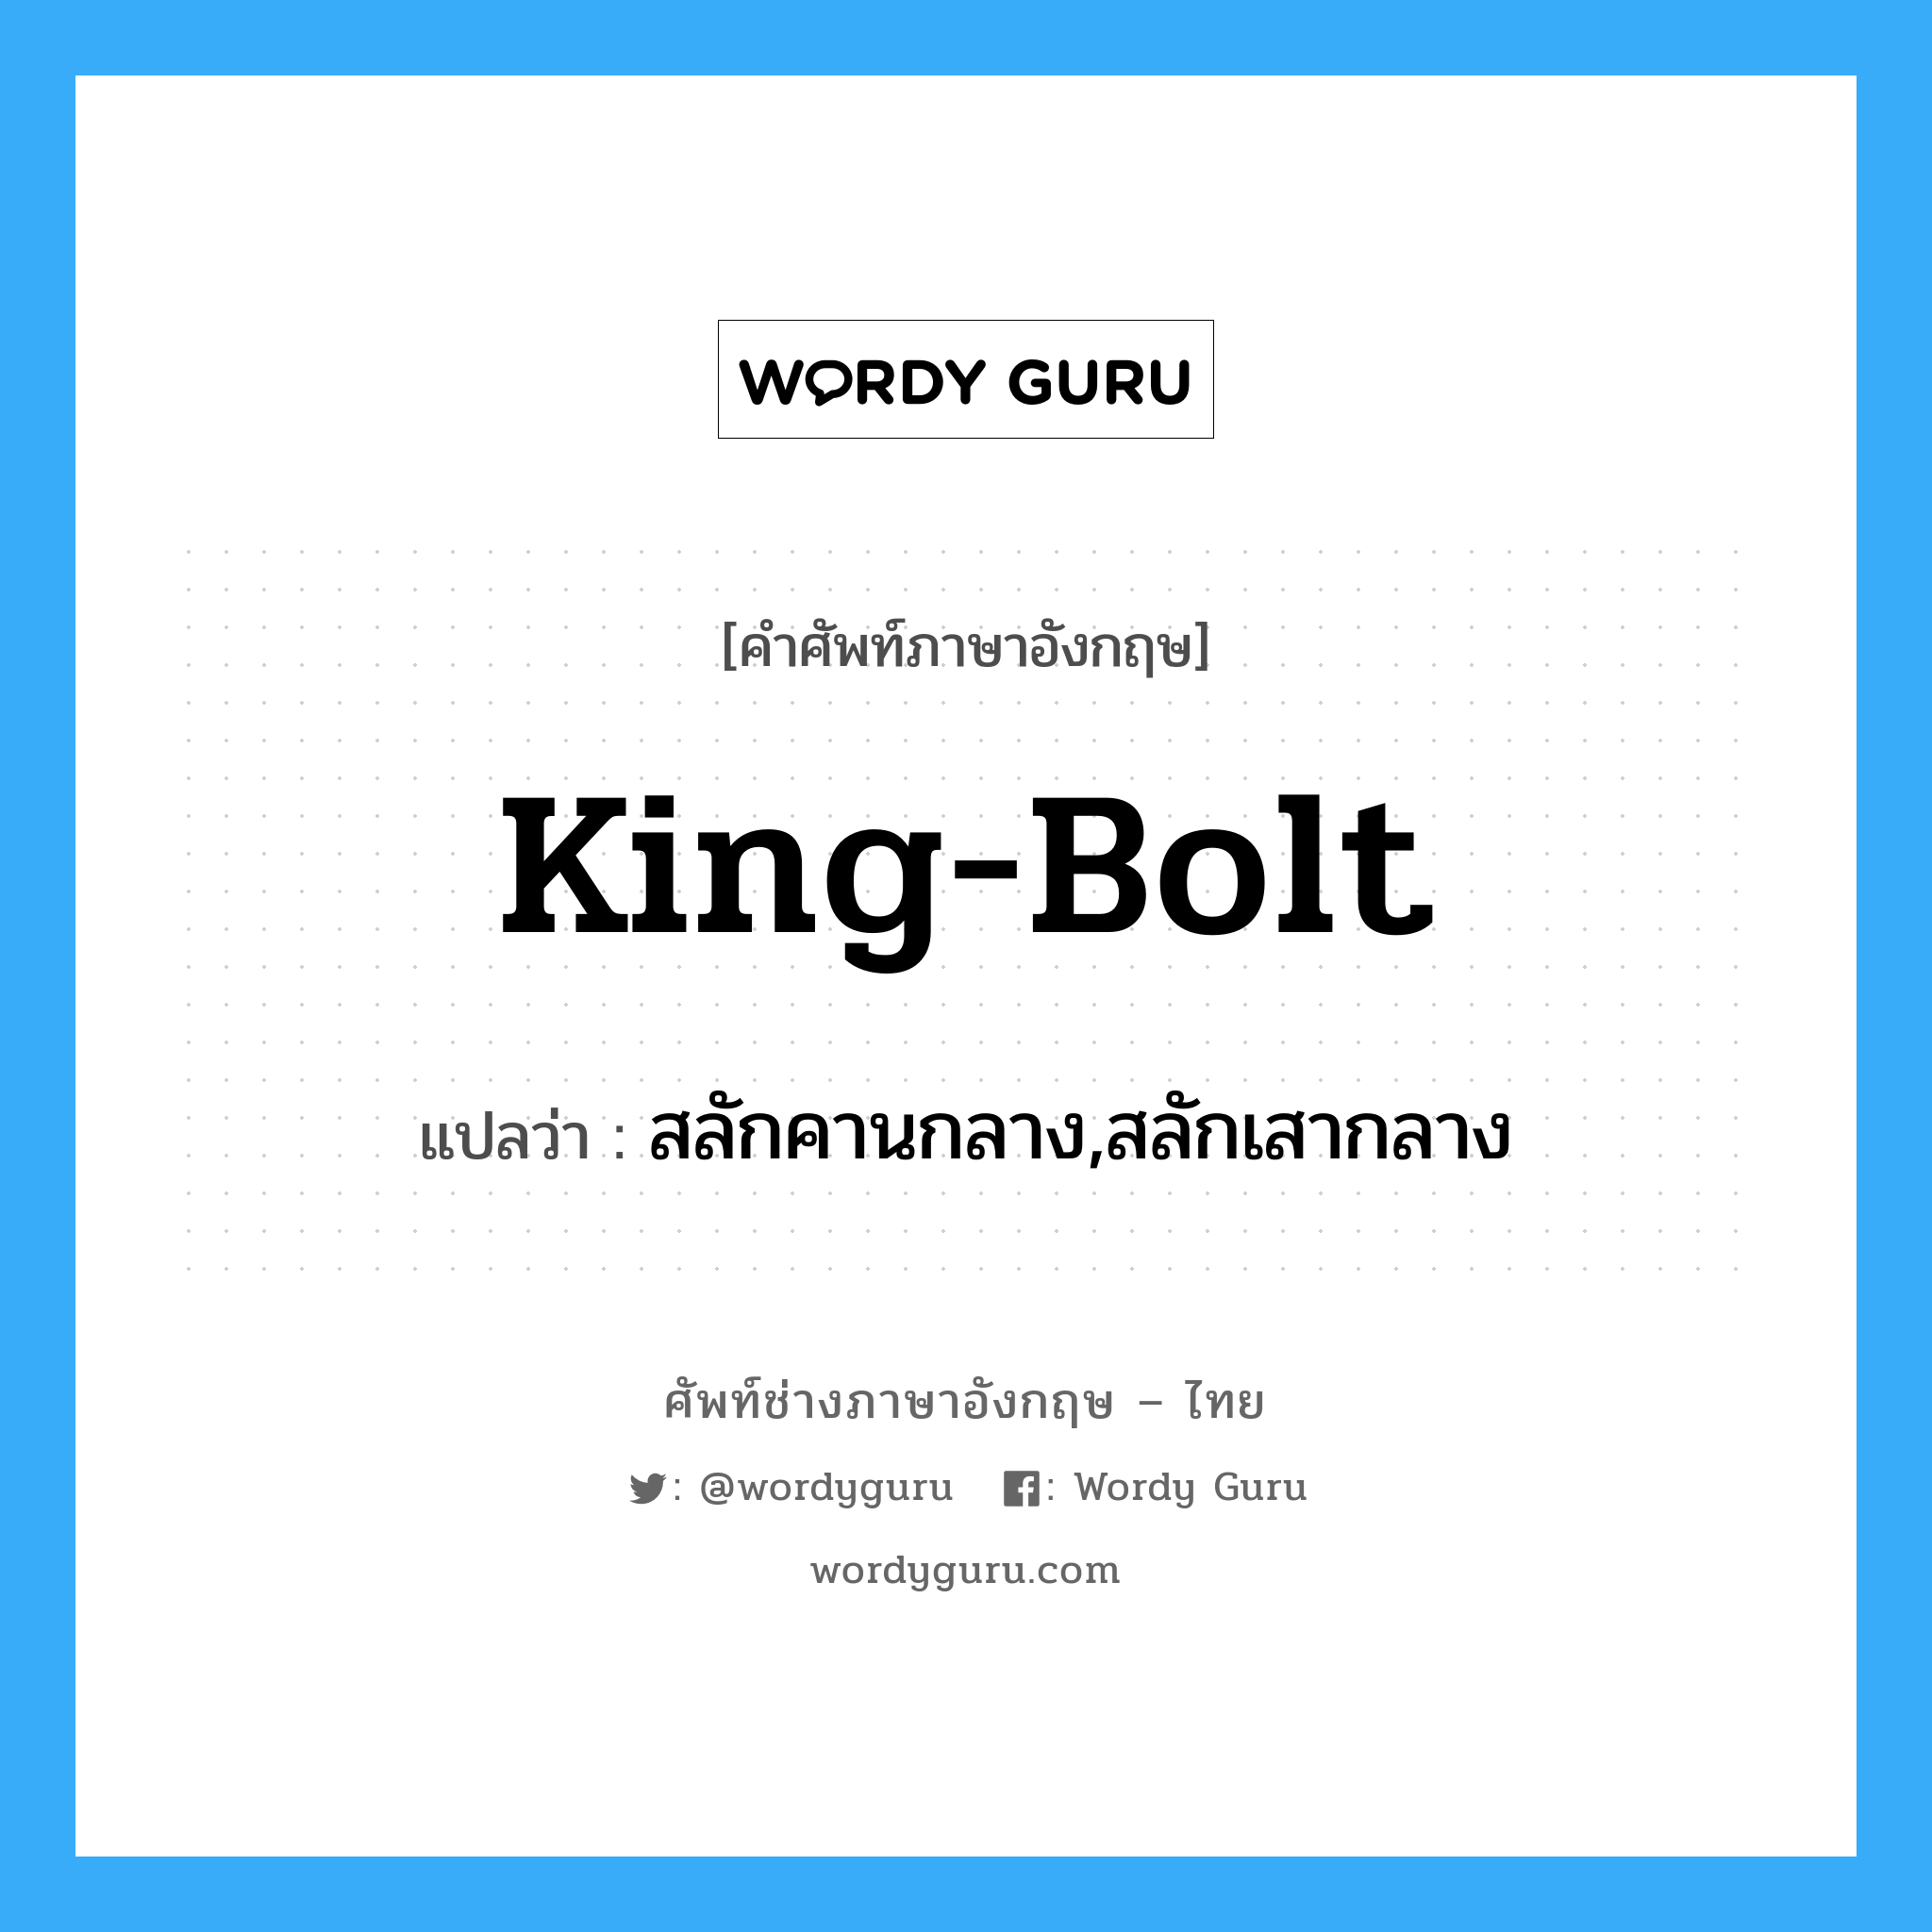 king-bolt แปลว่า?, คำศัพท์ช่างภาษาอังกฤษ - ไทย king-bolt คำศัพท์ภาษาอังกฤษ king-bolt แปลว่า สลักคานกลาง,สลักเสากลาง